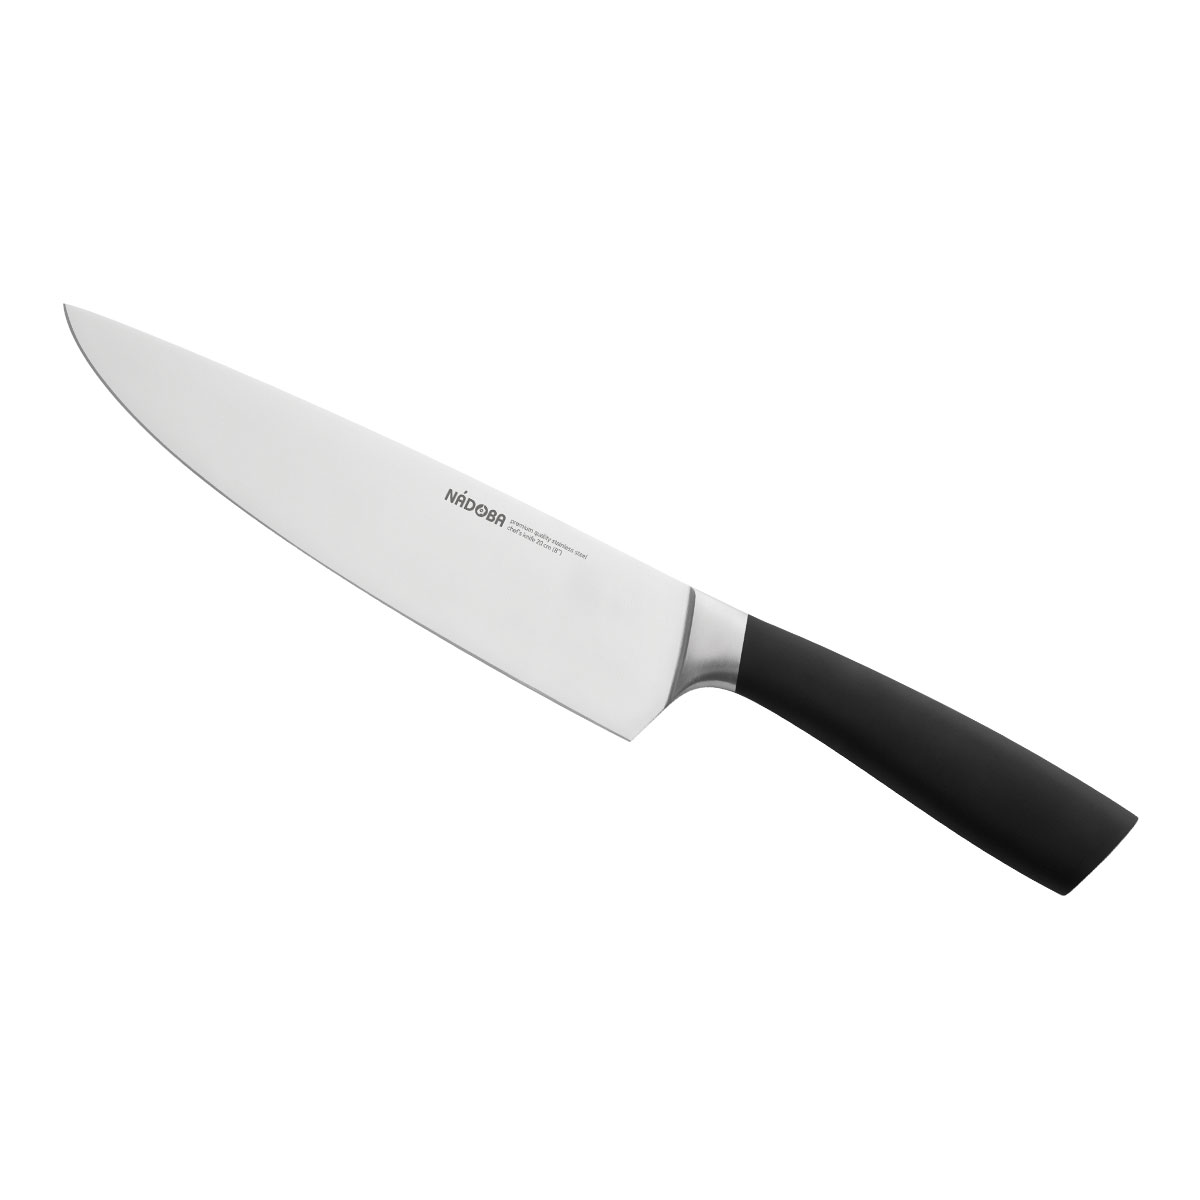 Нож Nadoba поварской 723910, 20 см nadoba нож поварской helga 20 см серебристый черный